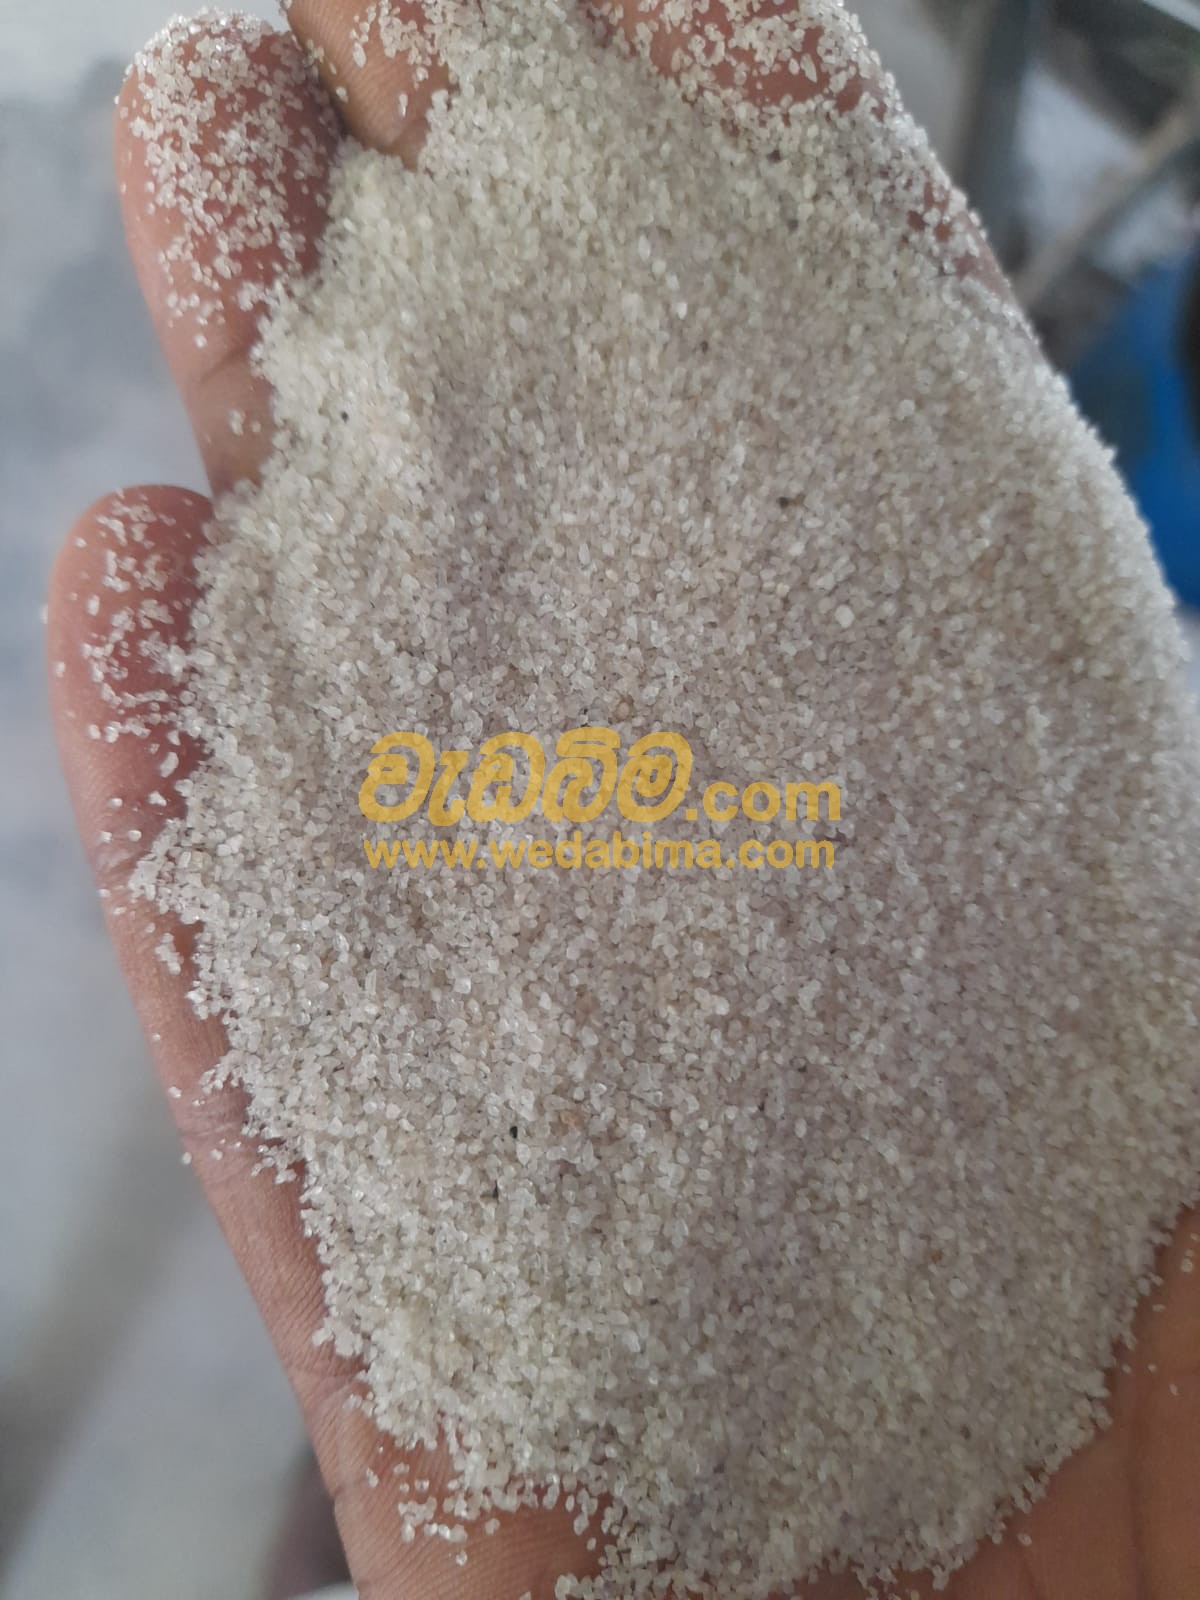 Silica Sand Price in Sri Lanka